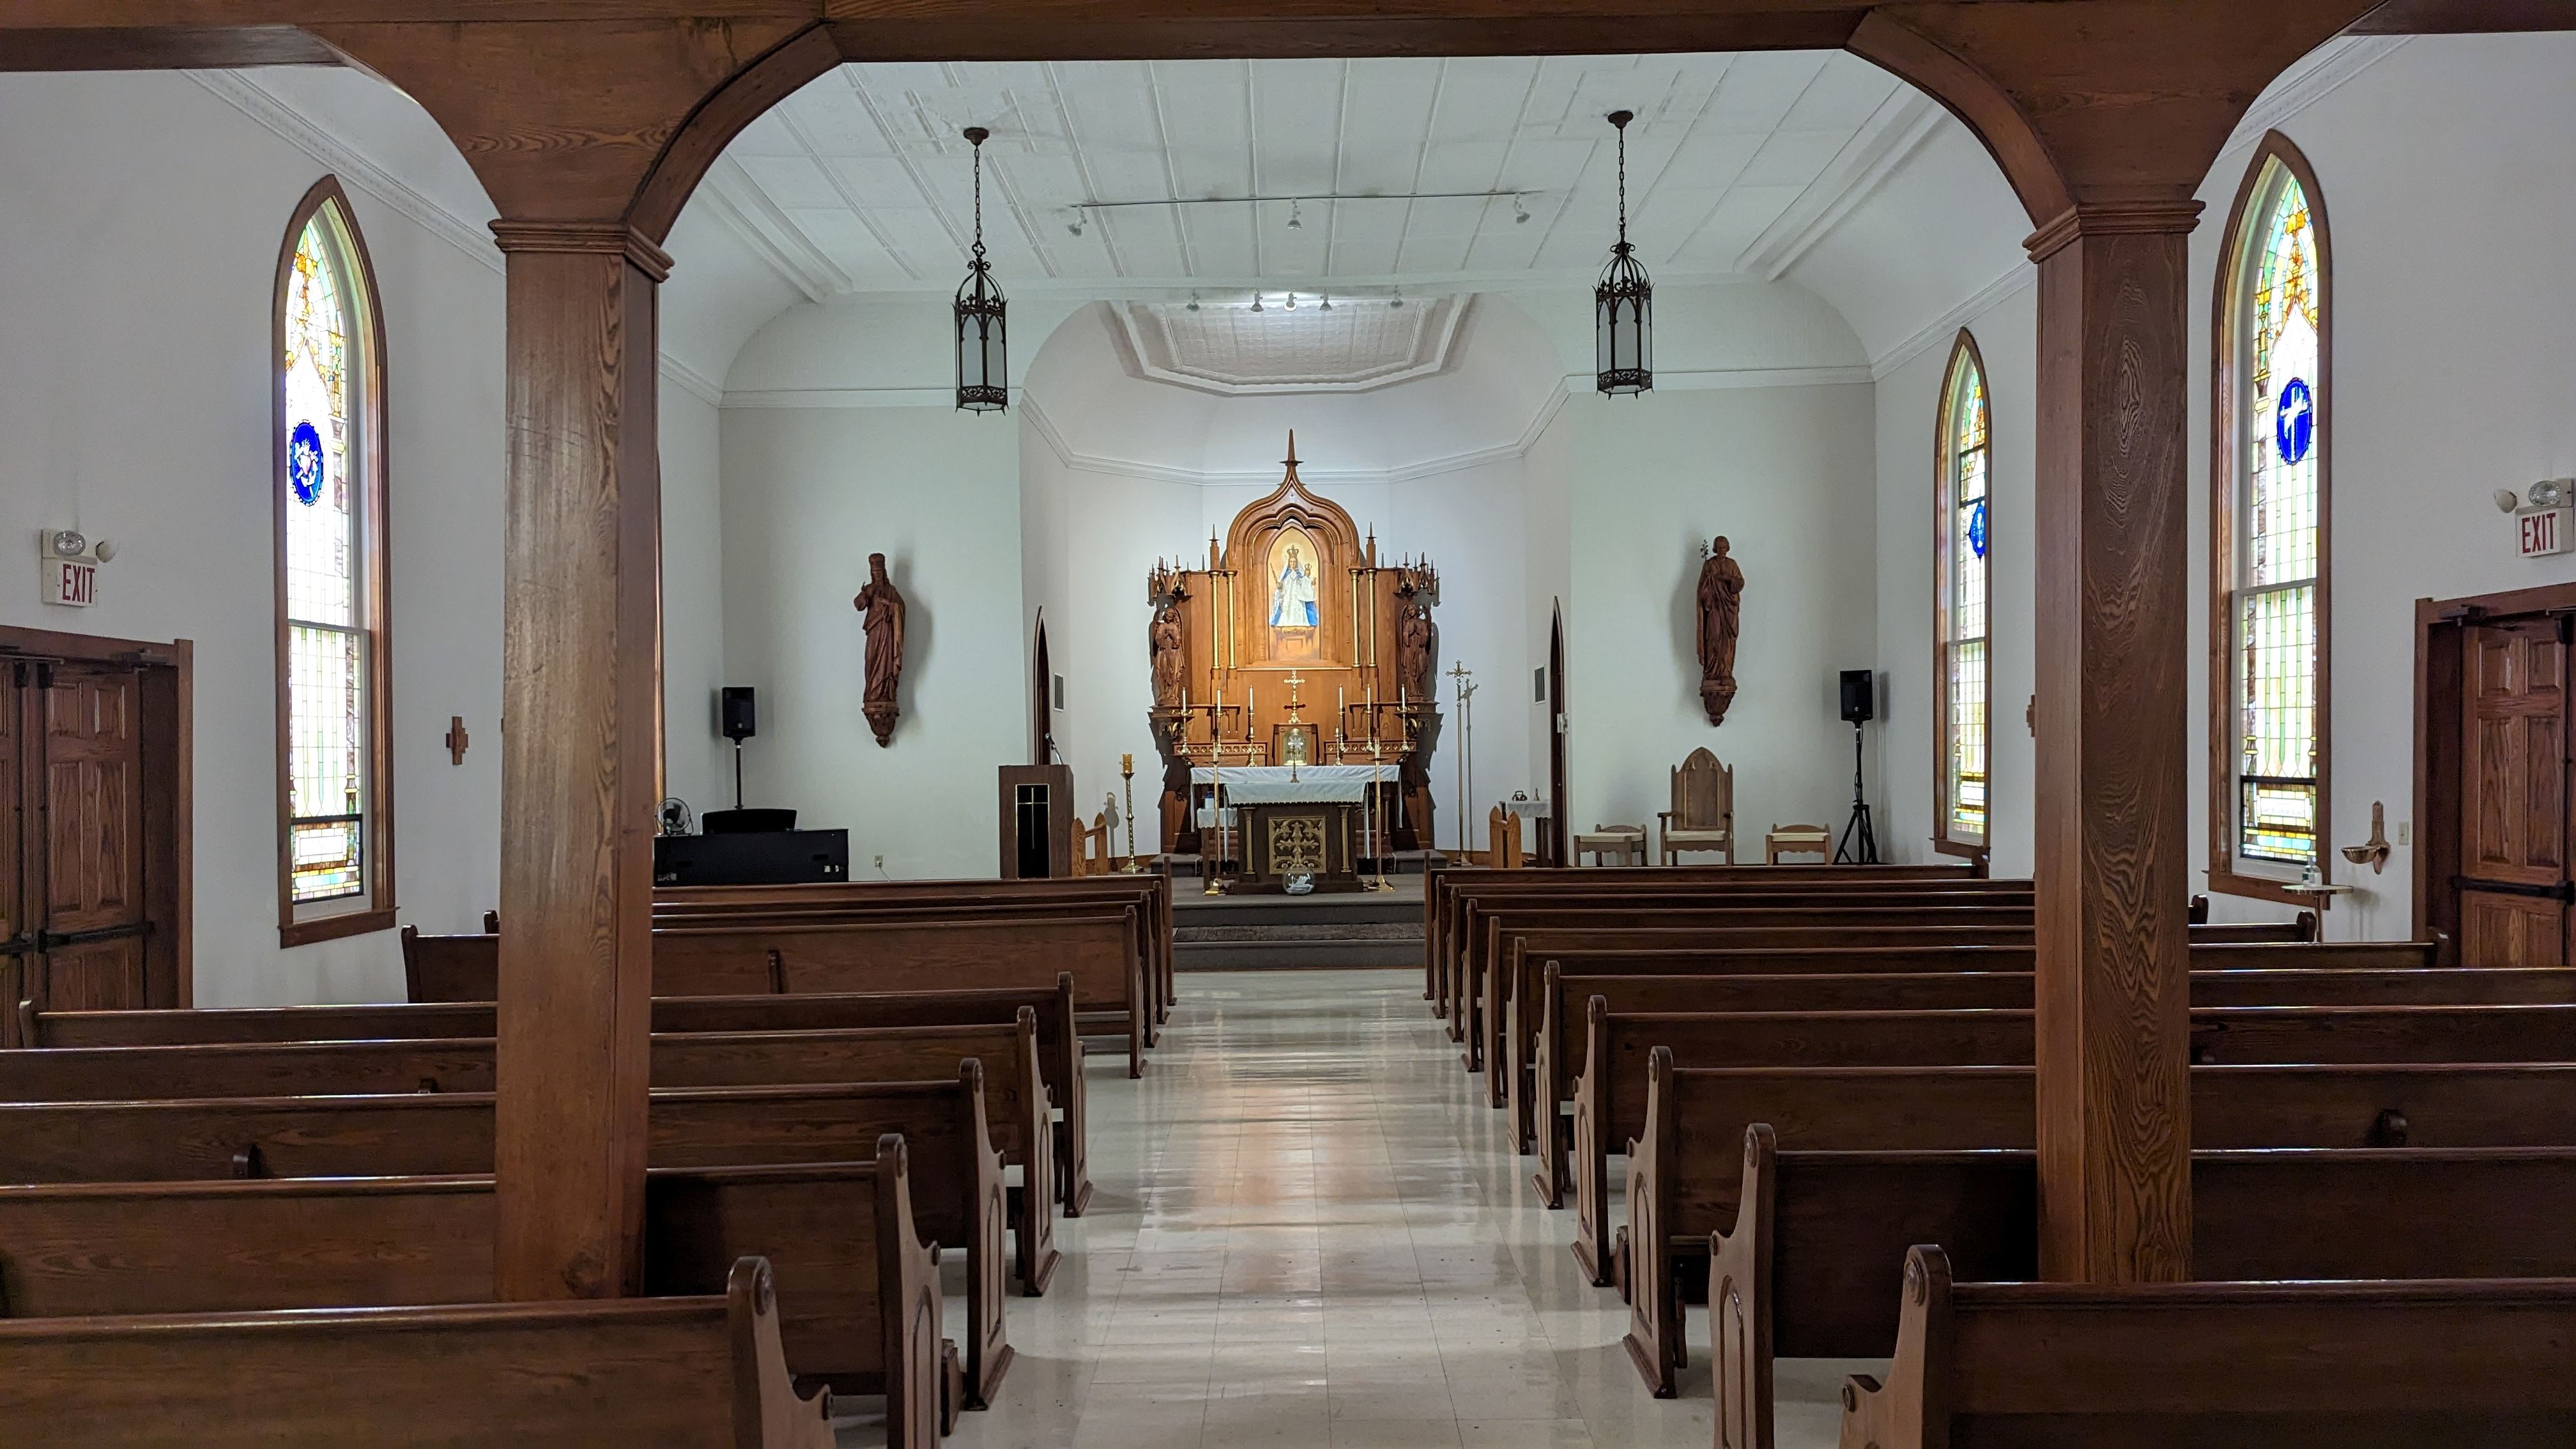 Original Shrine Church interiorreduced